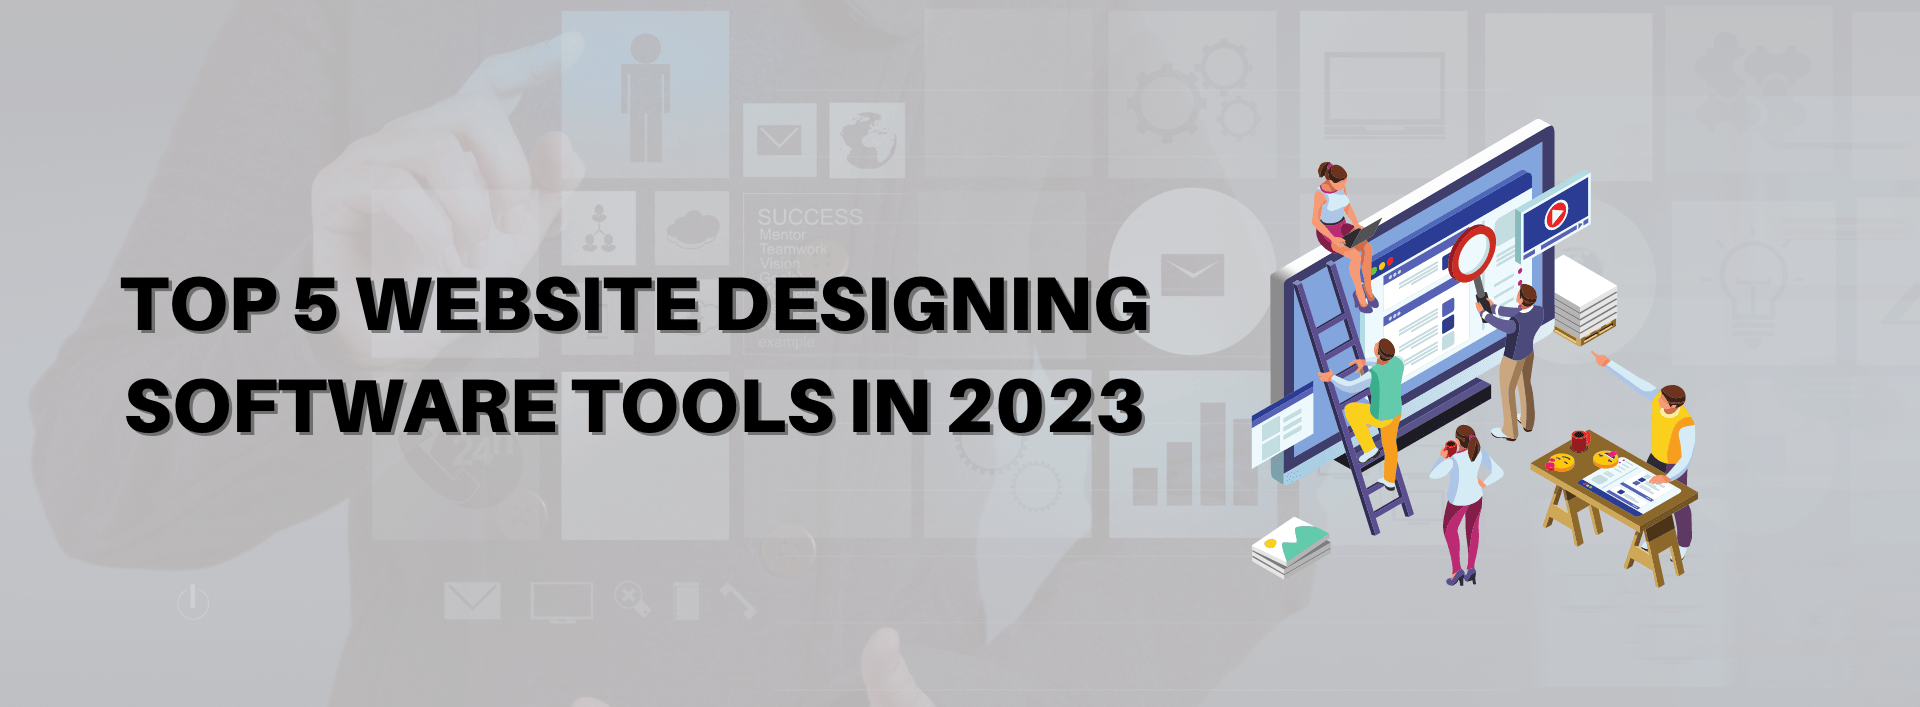 Top 5 Website Designing Software Tools in 2023